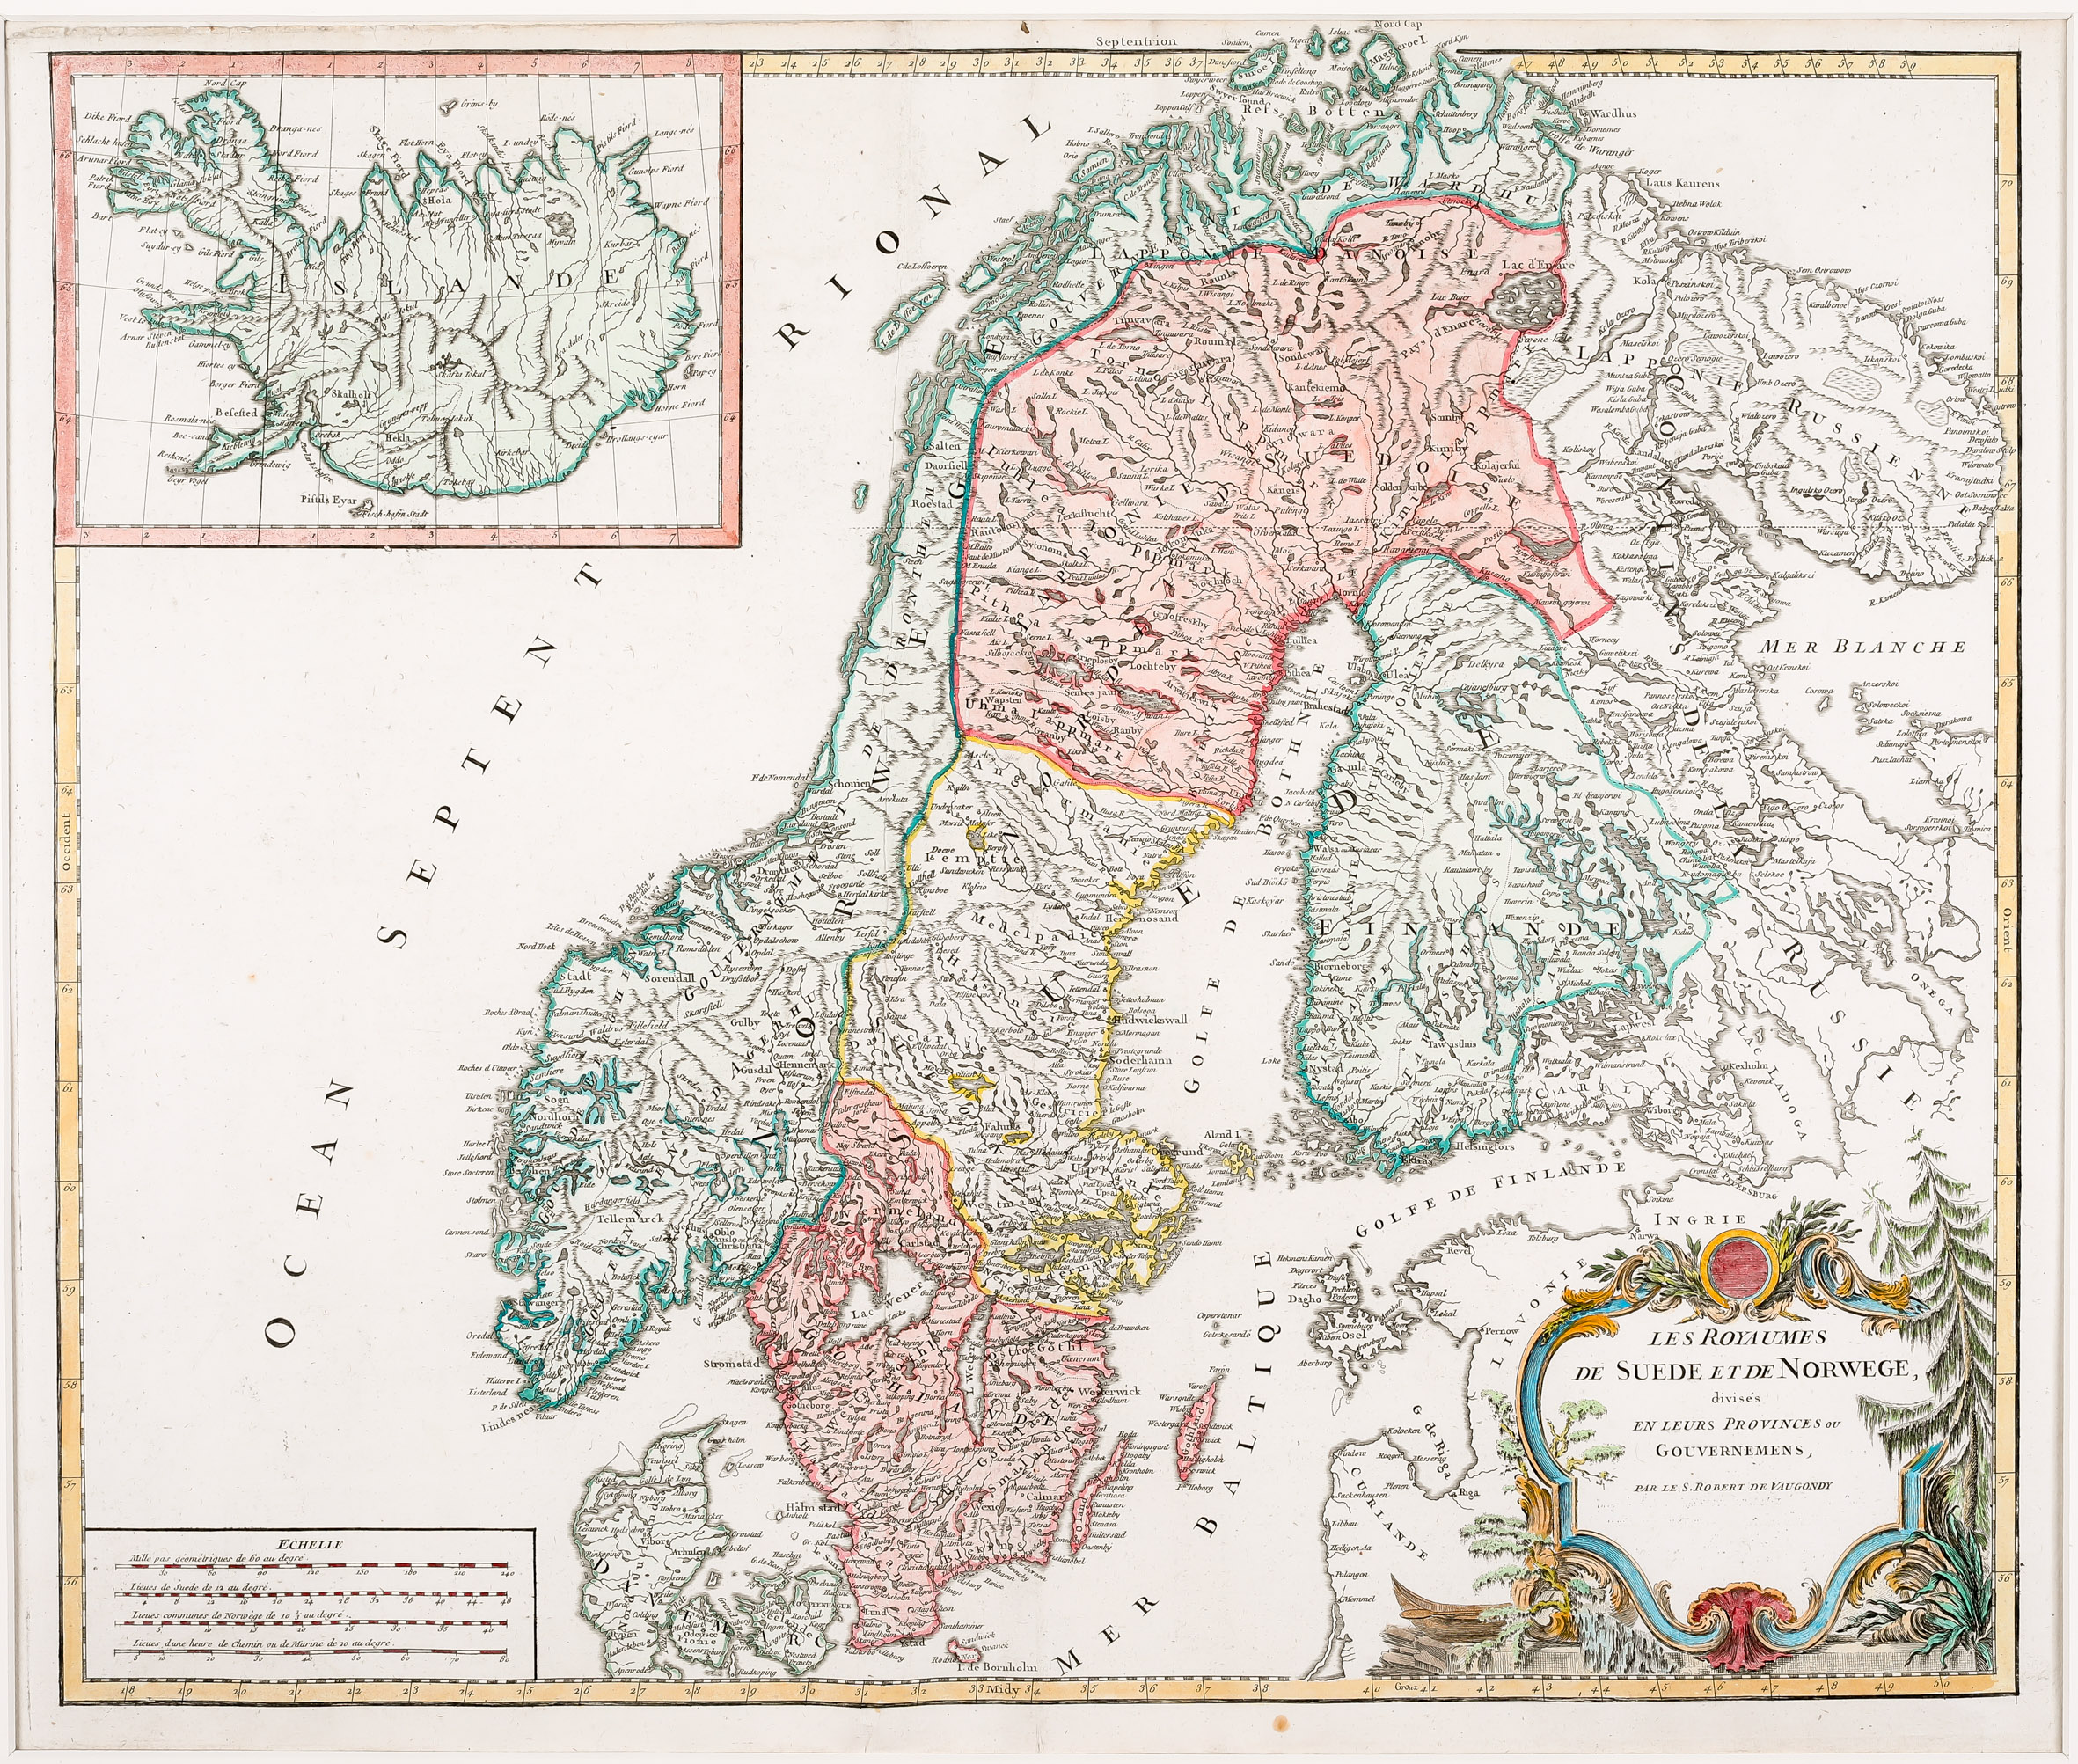 99. Les Royaumes de Suede et de Norwege, divises en leurs Provinces ou Gouvernemens